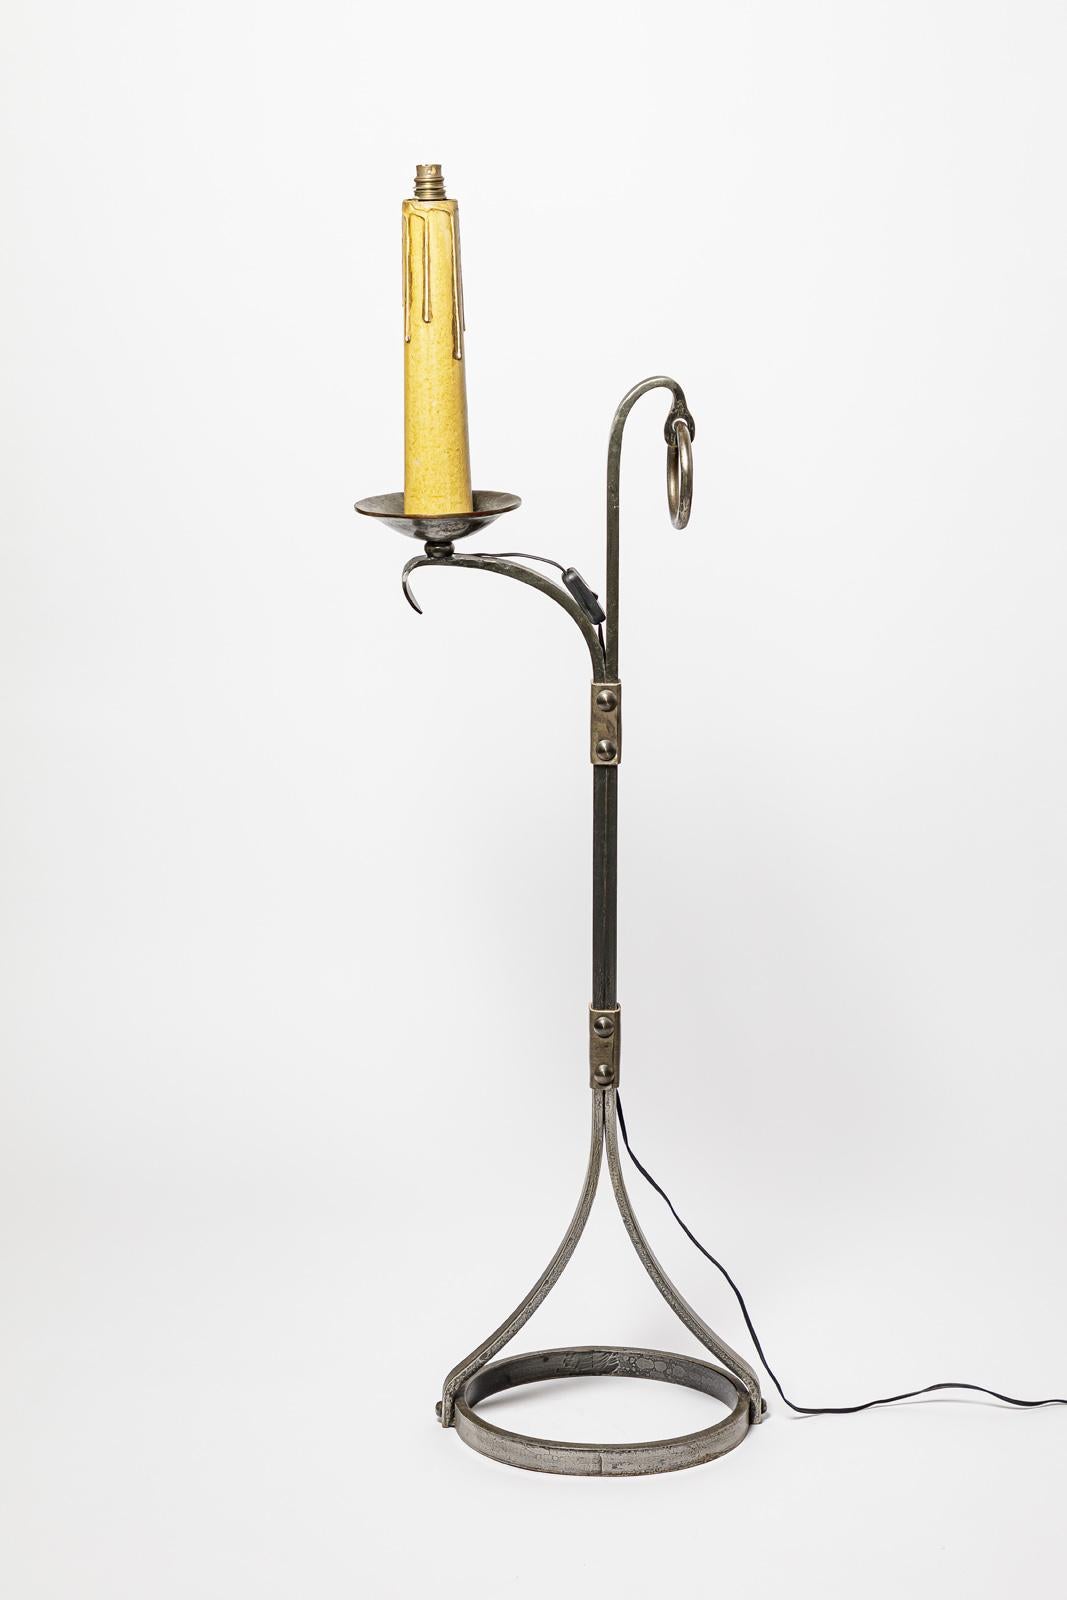 Jean-Pierre Ryckaert

Grand lampadaire en métal et cuir

Lampe design du 20e siècle

Condition originale parfaite.

Hauteur 128 cm
Large 32 cm
Profondeur 25 cm